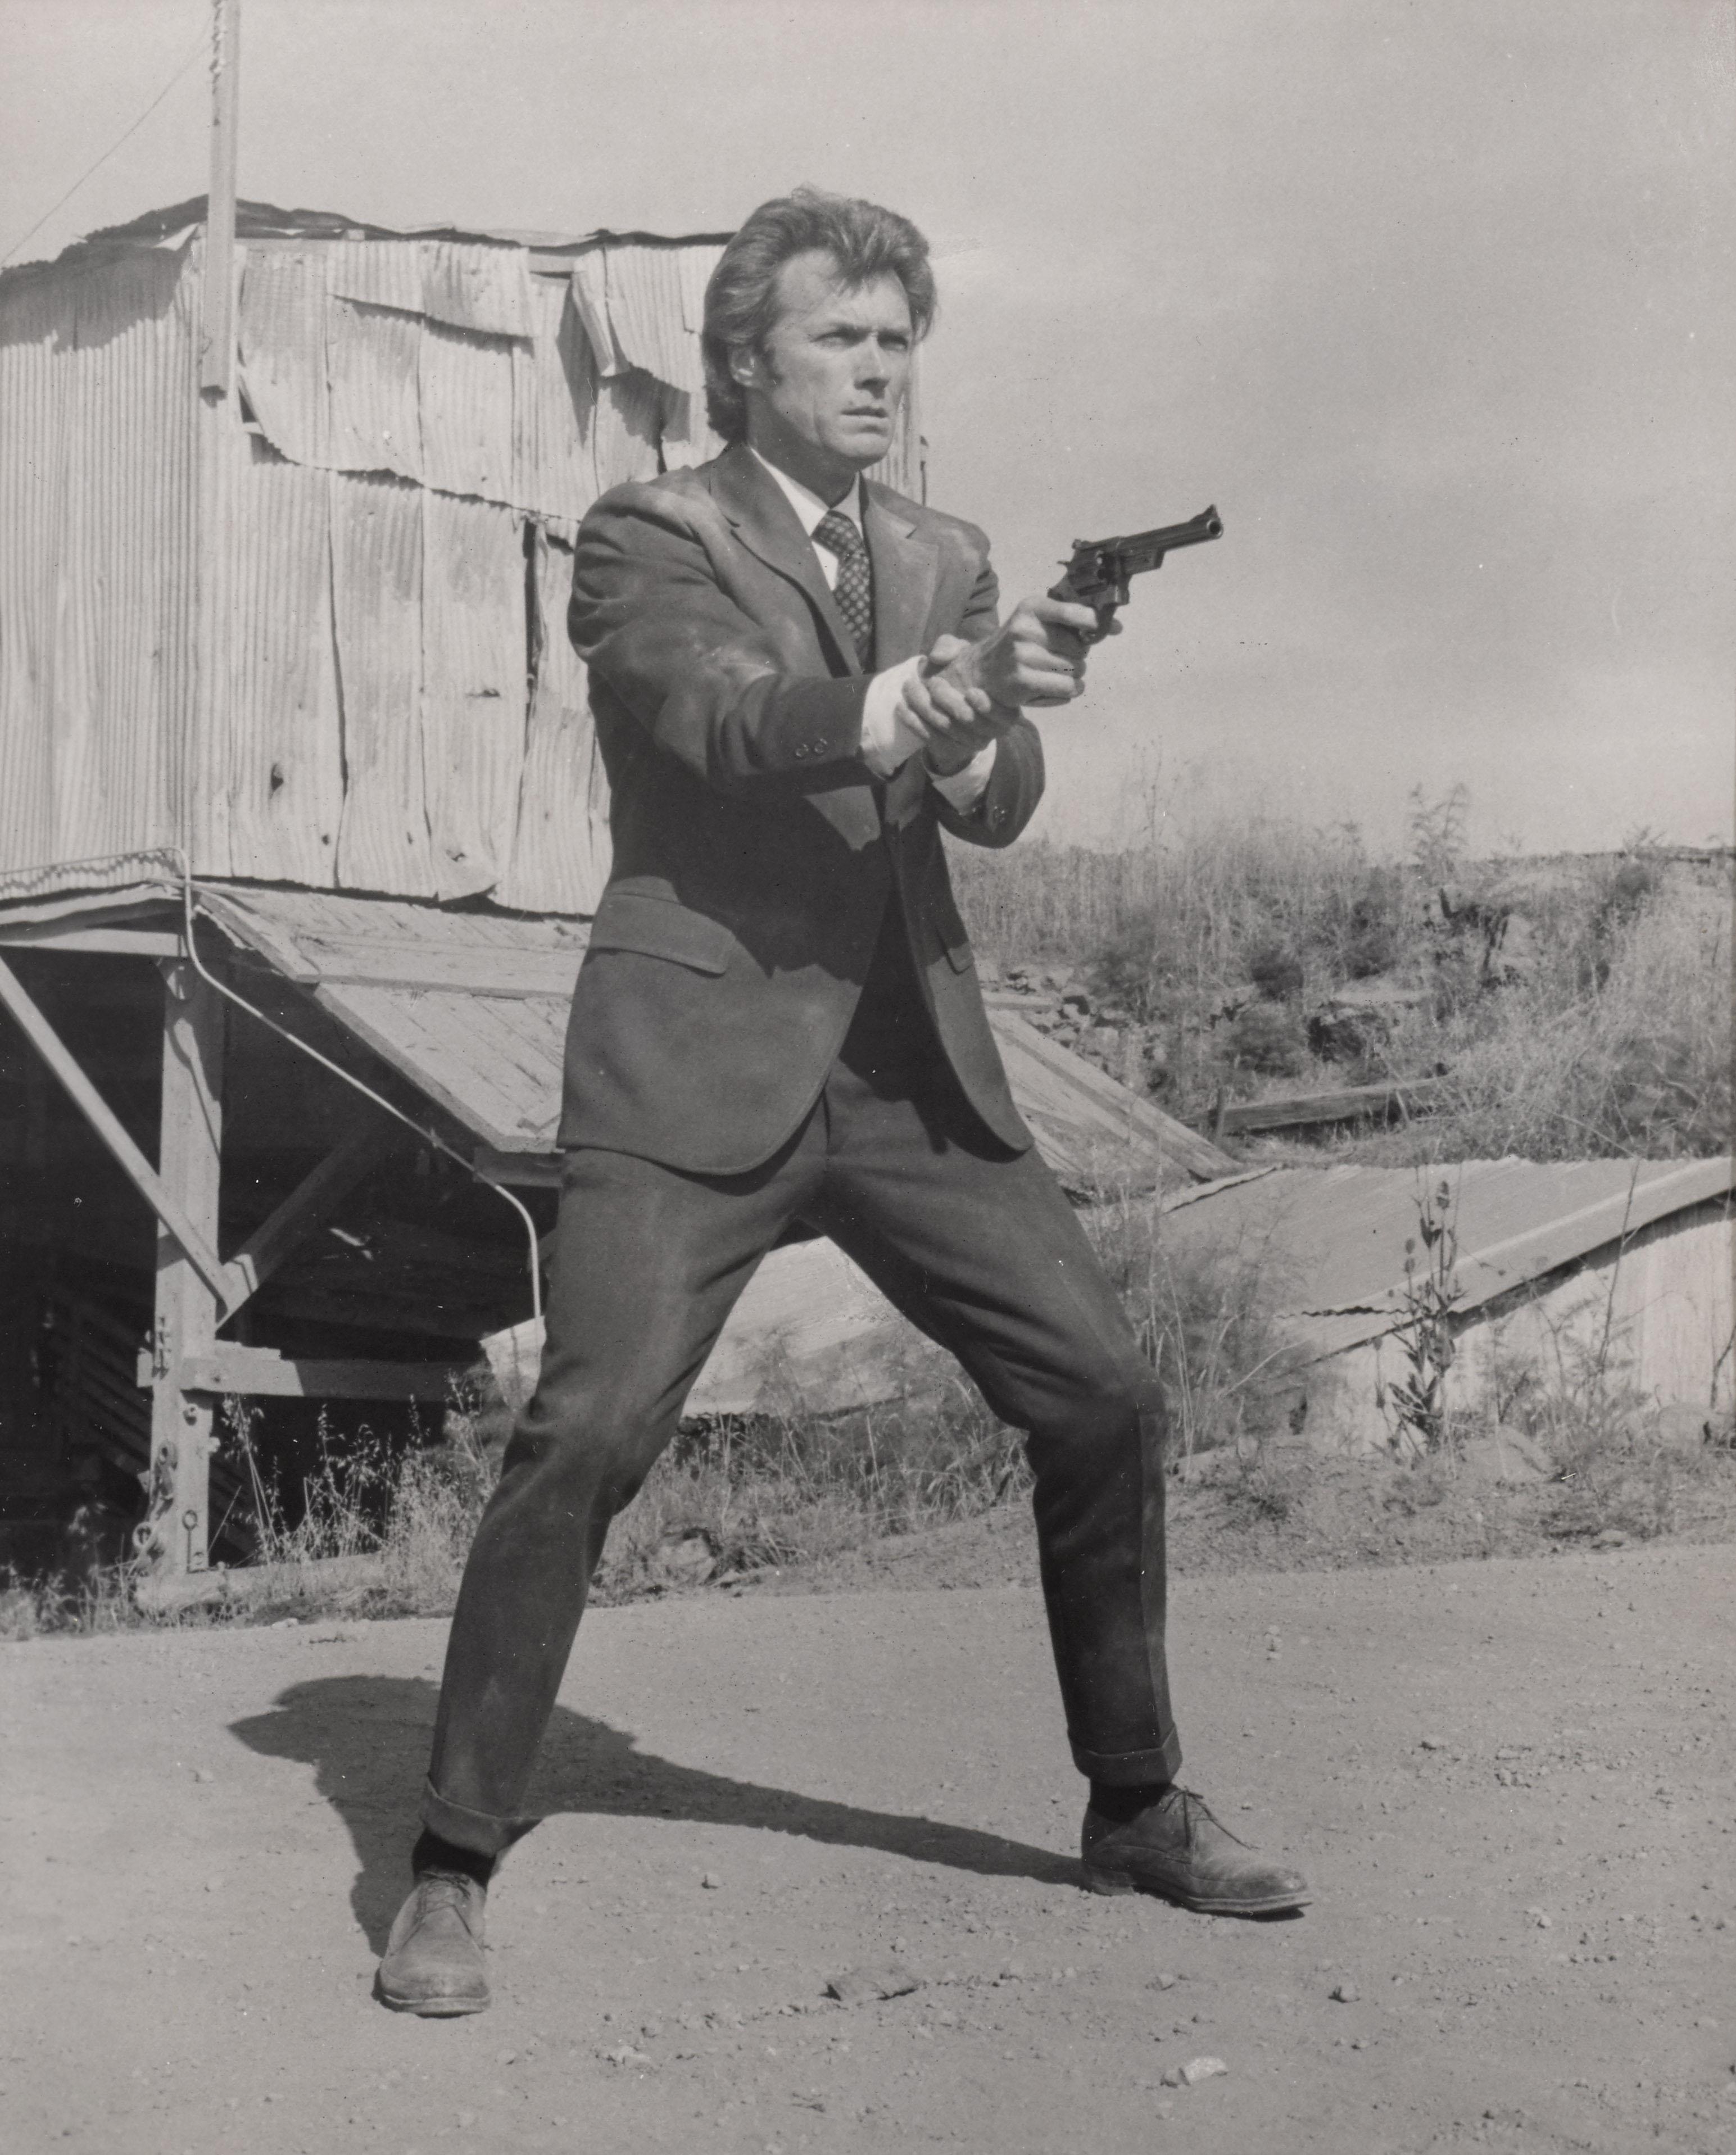 Original-Fotostandbild für Clint Eastwoods Klassiker Dirty Harry.
Die Regie bei diesem Film führte Don Siegel. 
Dieses Werk ist in einem Sapele-Holzrahmen mit säurefreien Passepartouts und UV-Plexiglas gerahmt.
Die angegebene Größe ist vor der